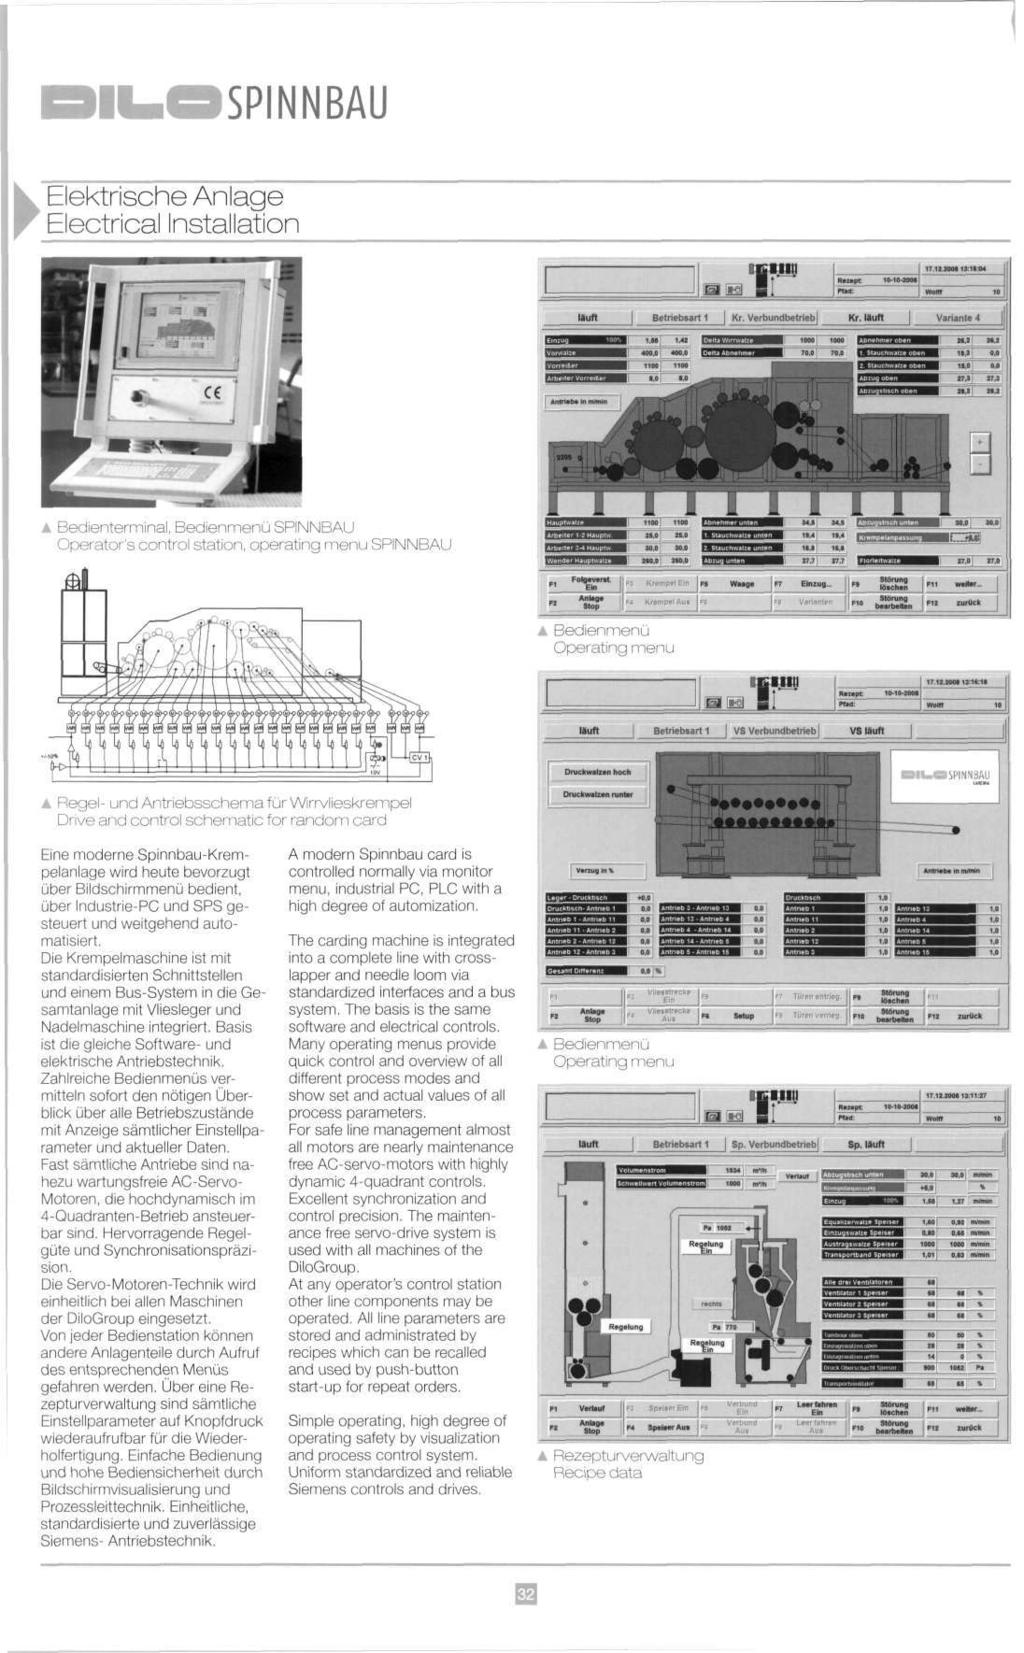 SPINNBAU : Elektrische Anlage Electrical Installation IB Rtiapt 10-10-2000 17.12.2006 19:11:04 liuft Betriebsart 1 Кг. Verbundbetneb Кг. ttuft Variante 4, - H H T - P. ^», 4.